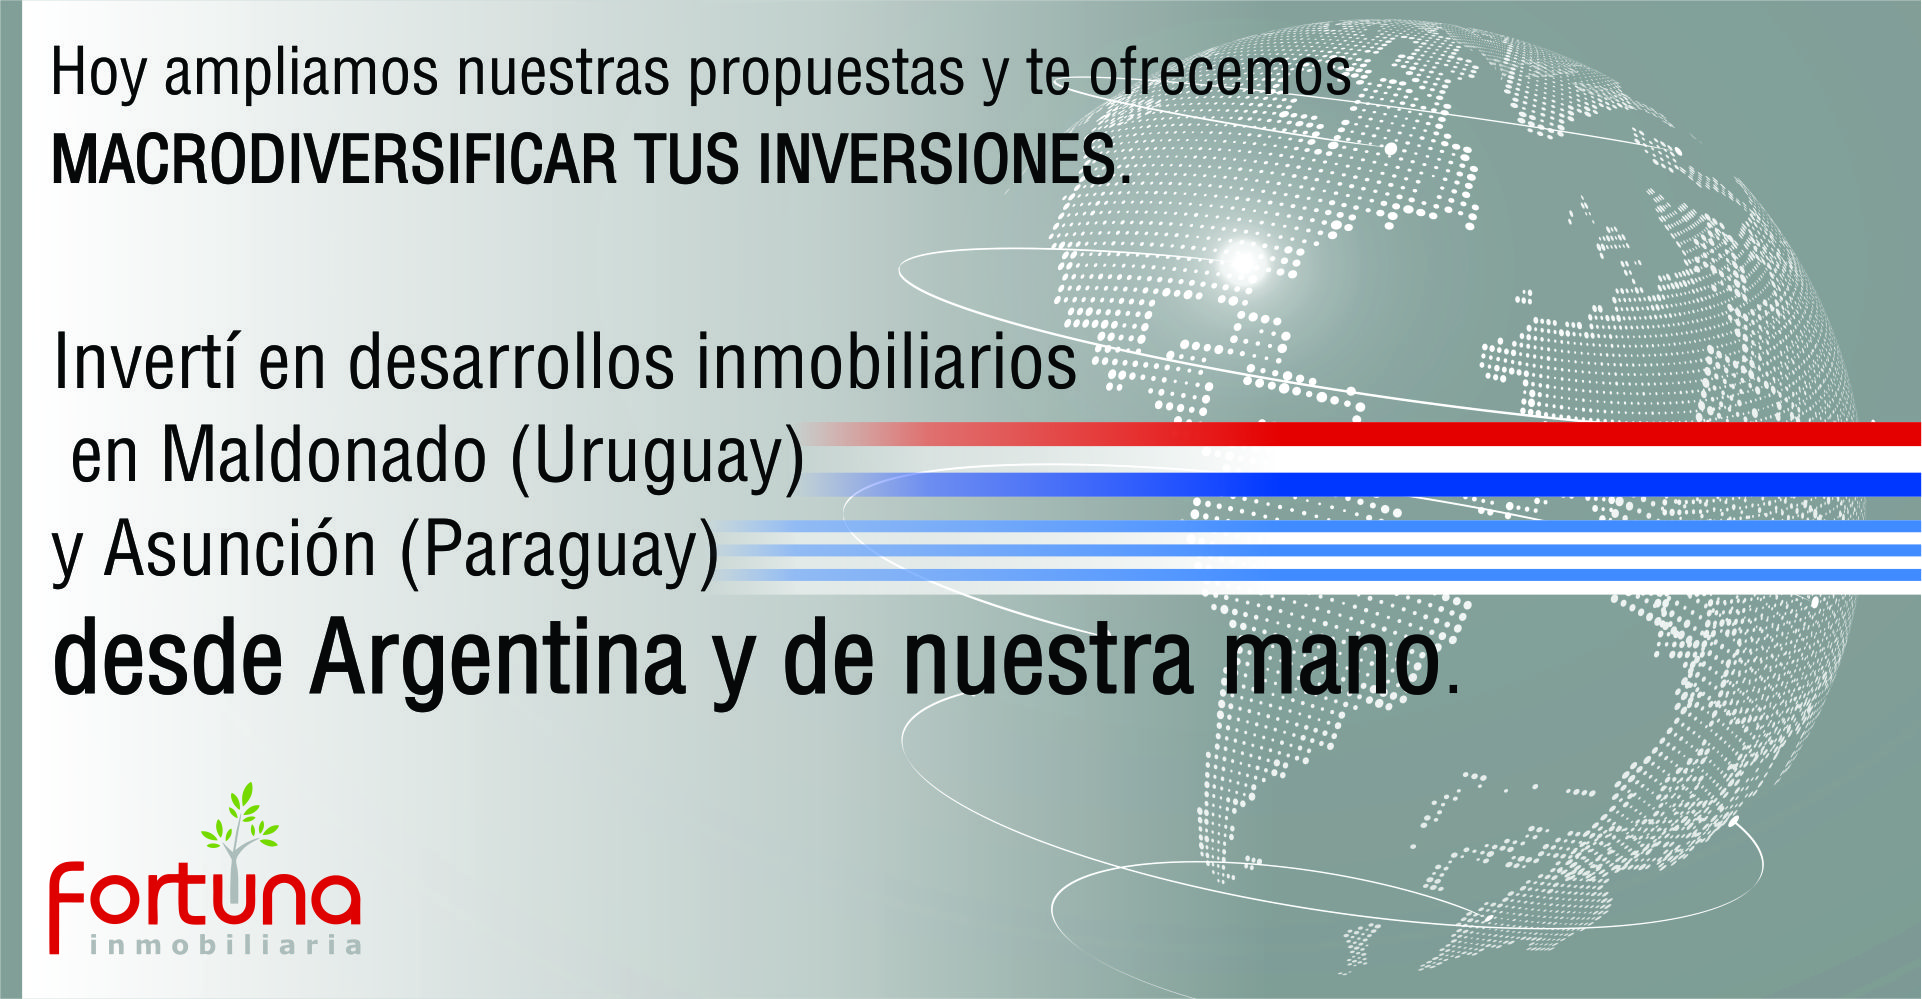 NOVEDADES-HoldingFortuna-Inversiones-Uruguay-Paraguay-Crowdfunding-Rentabilidad-FondeColectivo-Macrodiversificacion-FortunaInmobiliaria